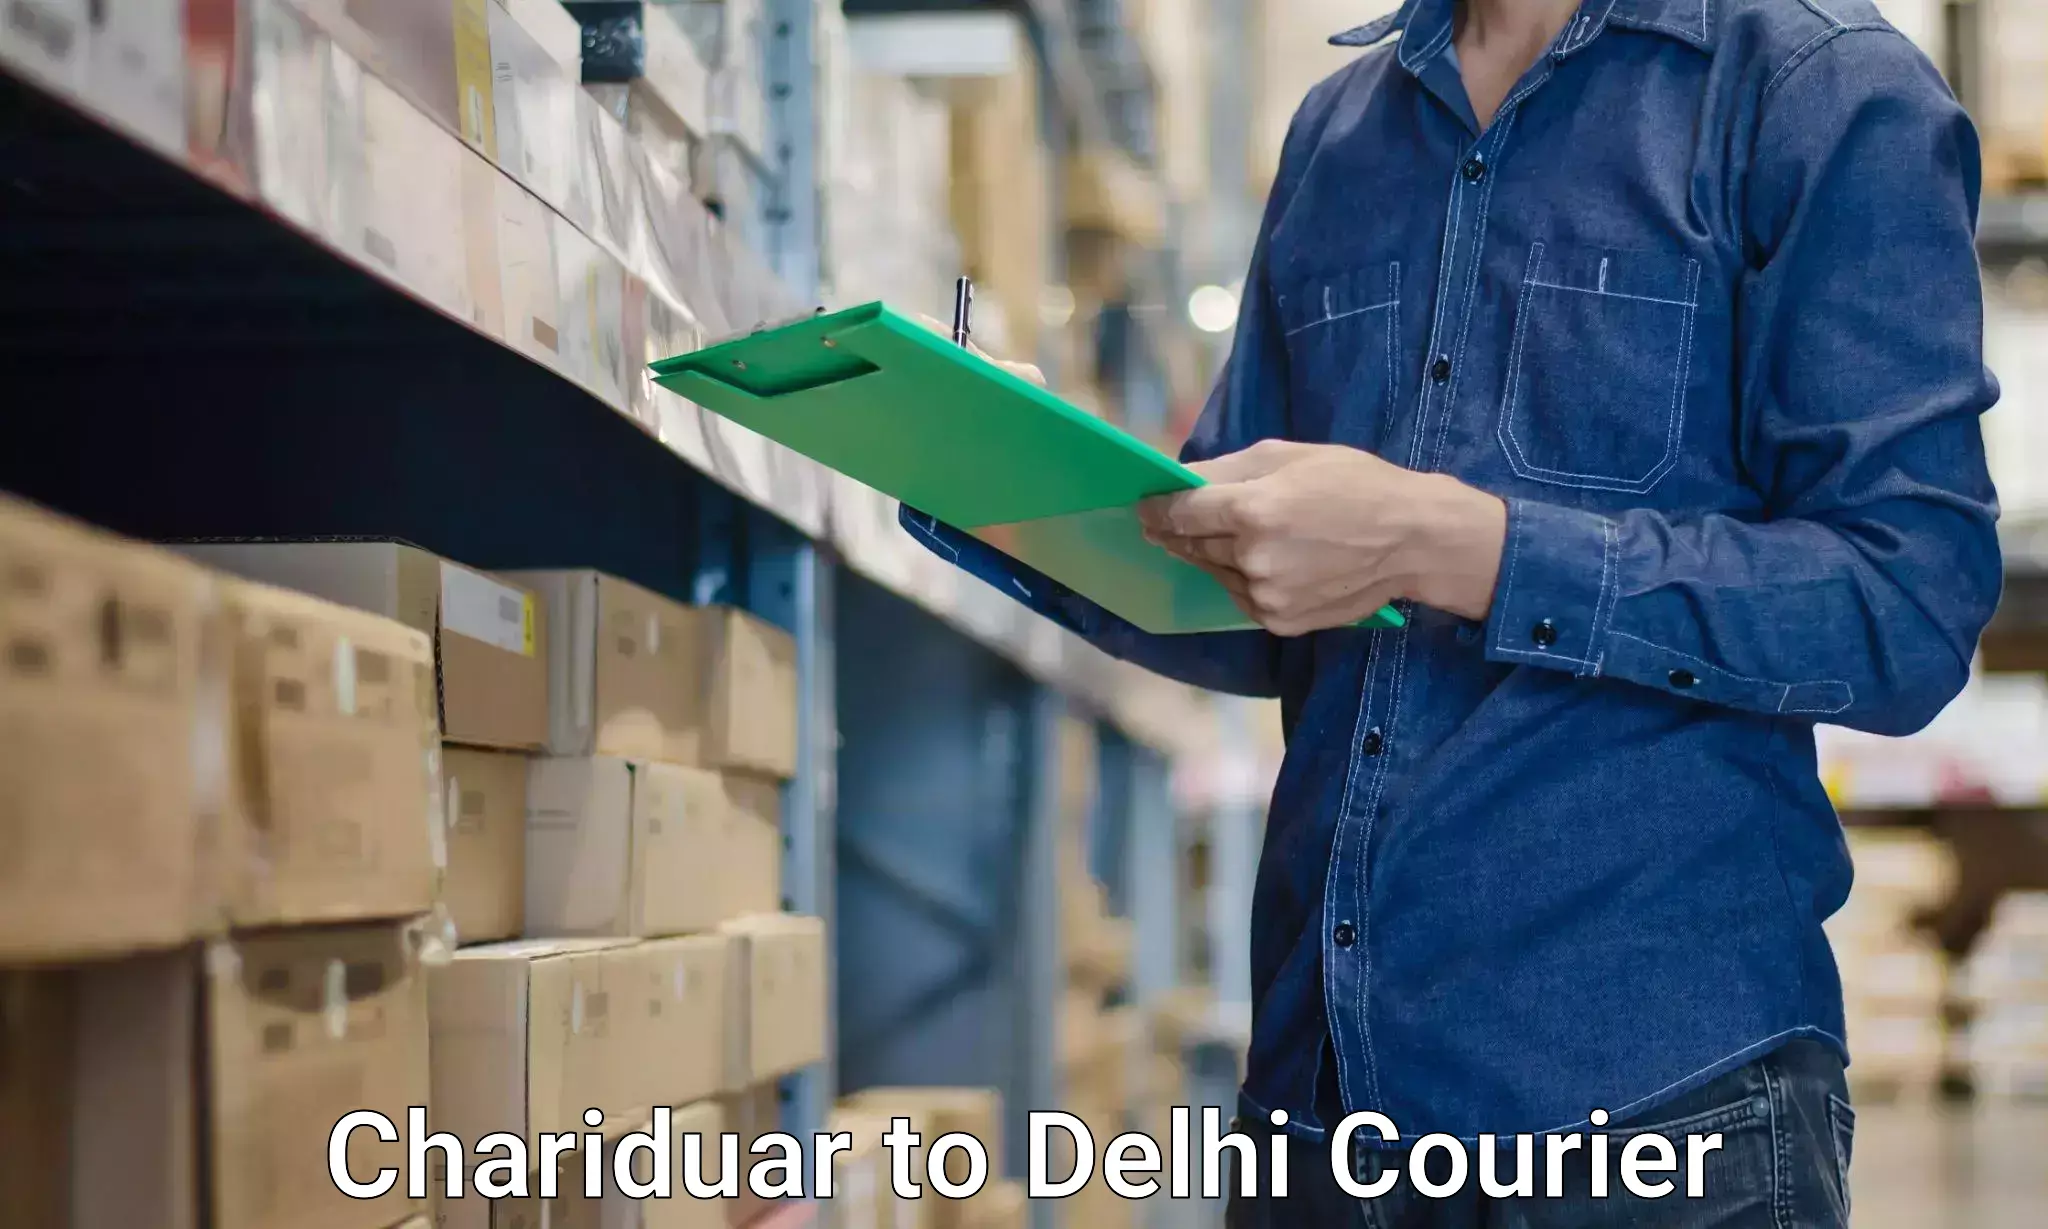 Household goods transporters Chariduar to Delhi